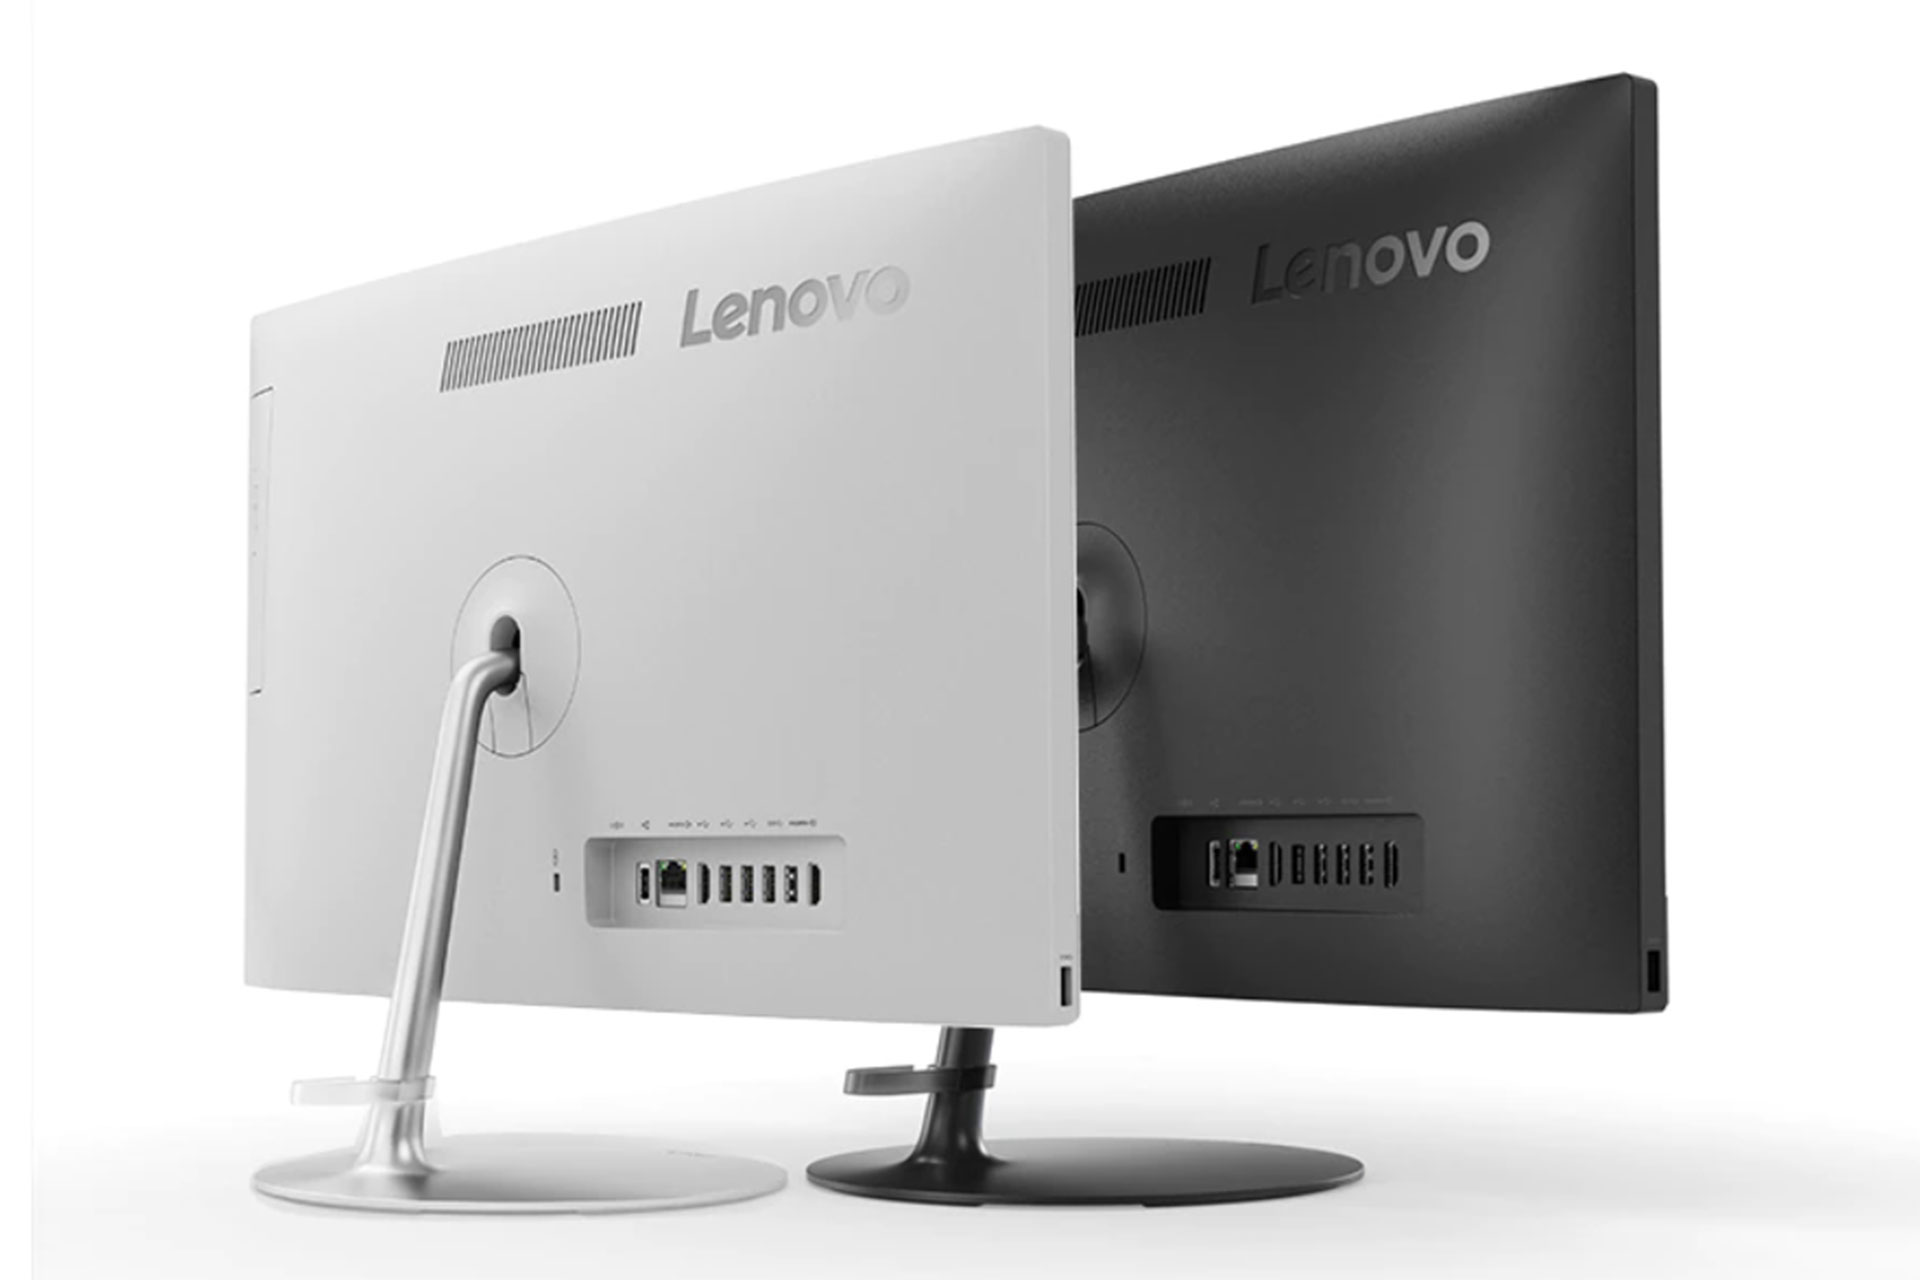 کامپیوتر همه کاره Lenovo AIO520 با صفحه نمایش ۲۳٫۸ اینچی در چین عرضه شد